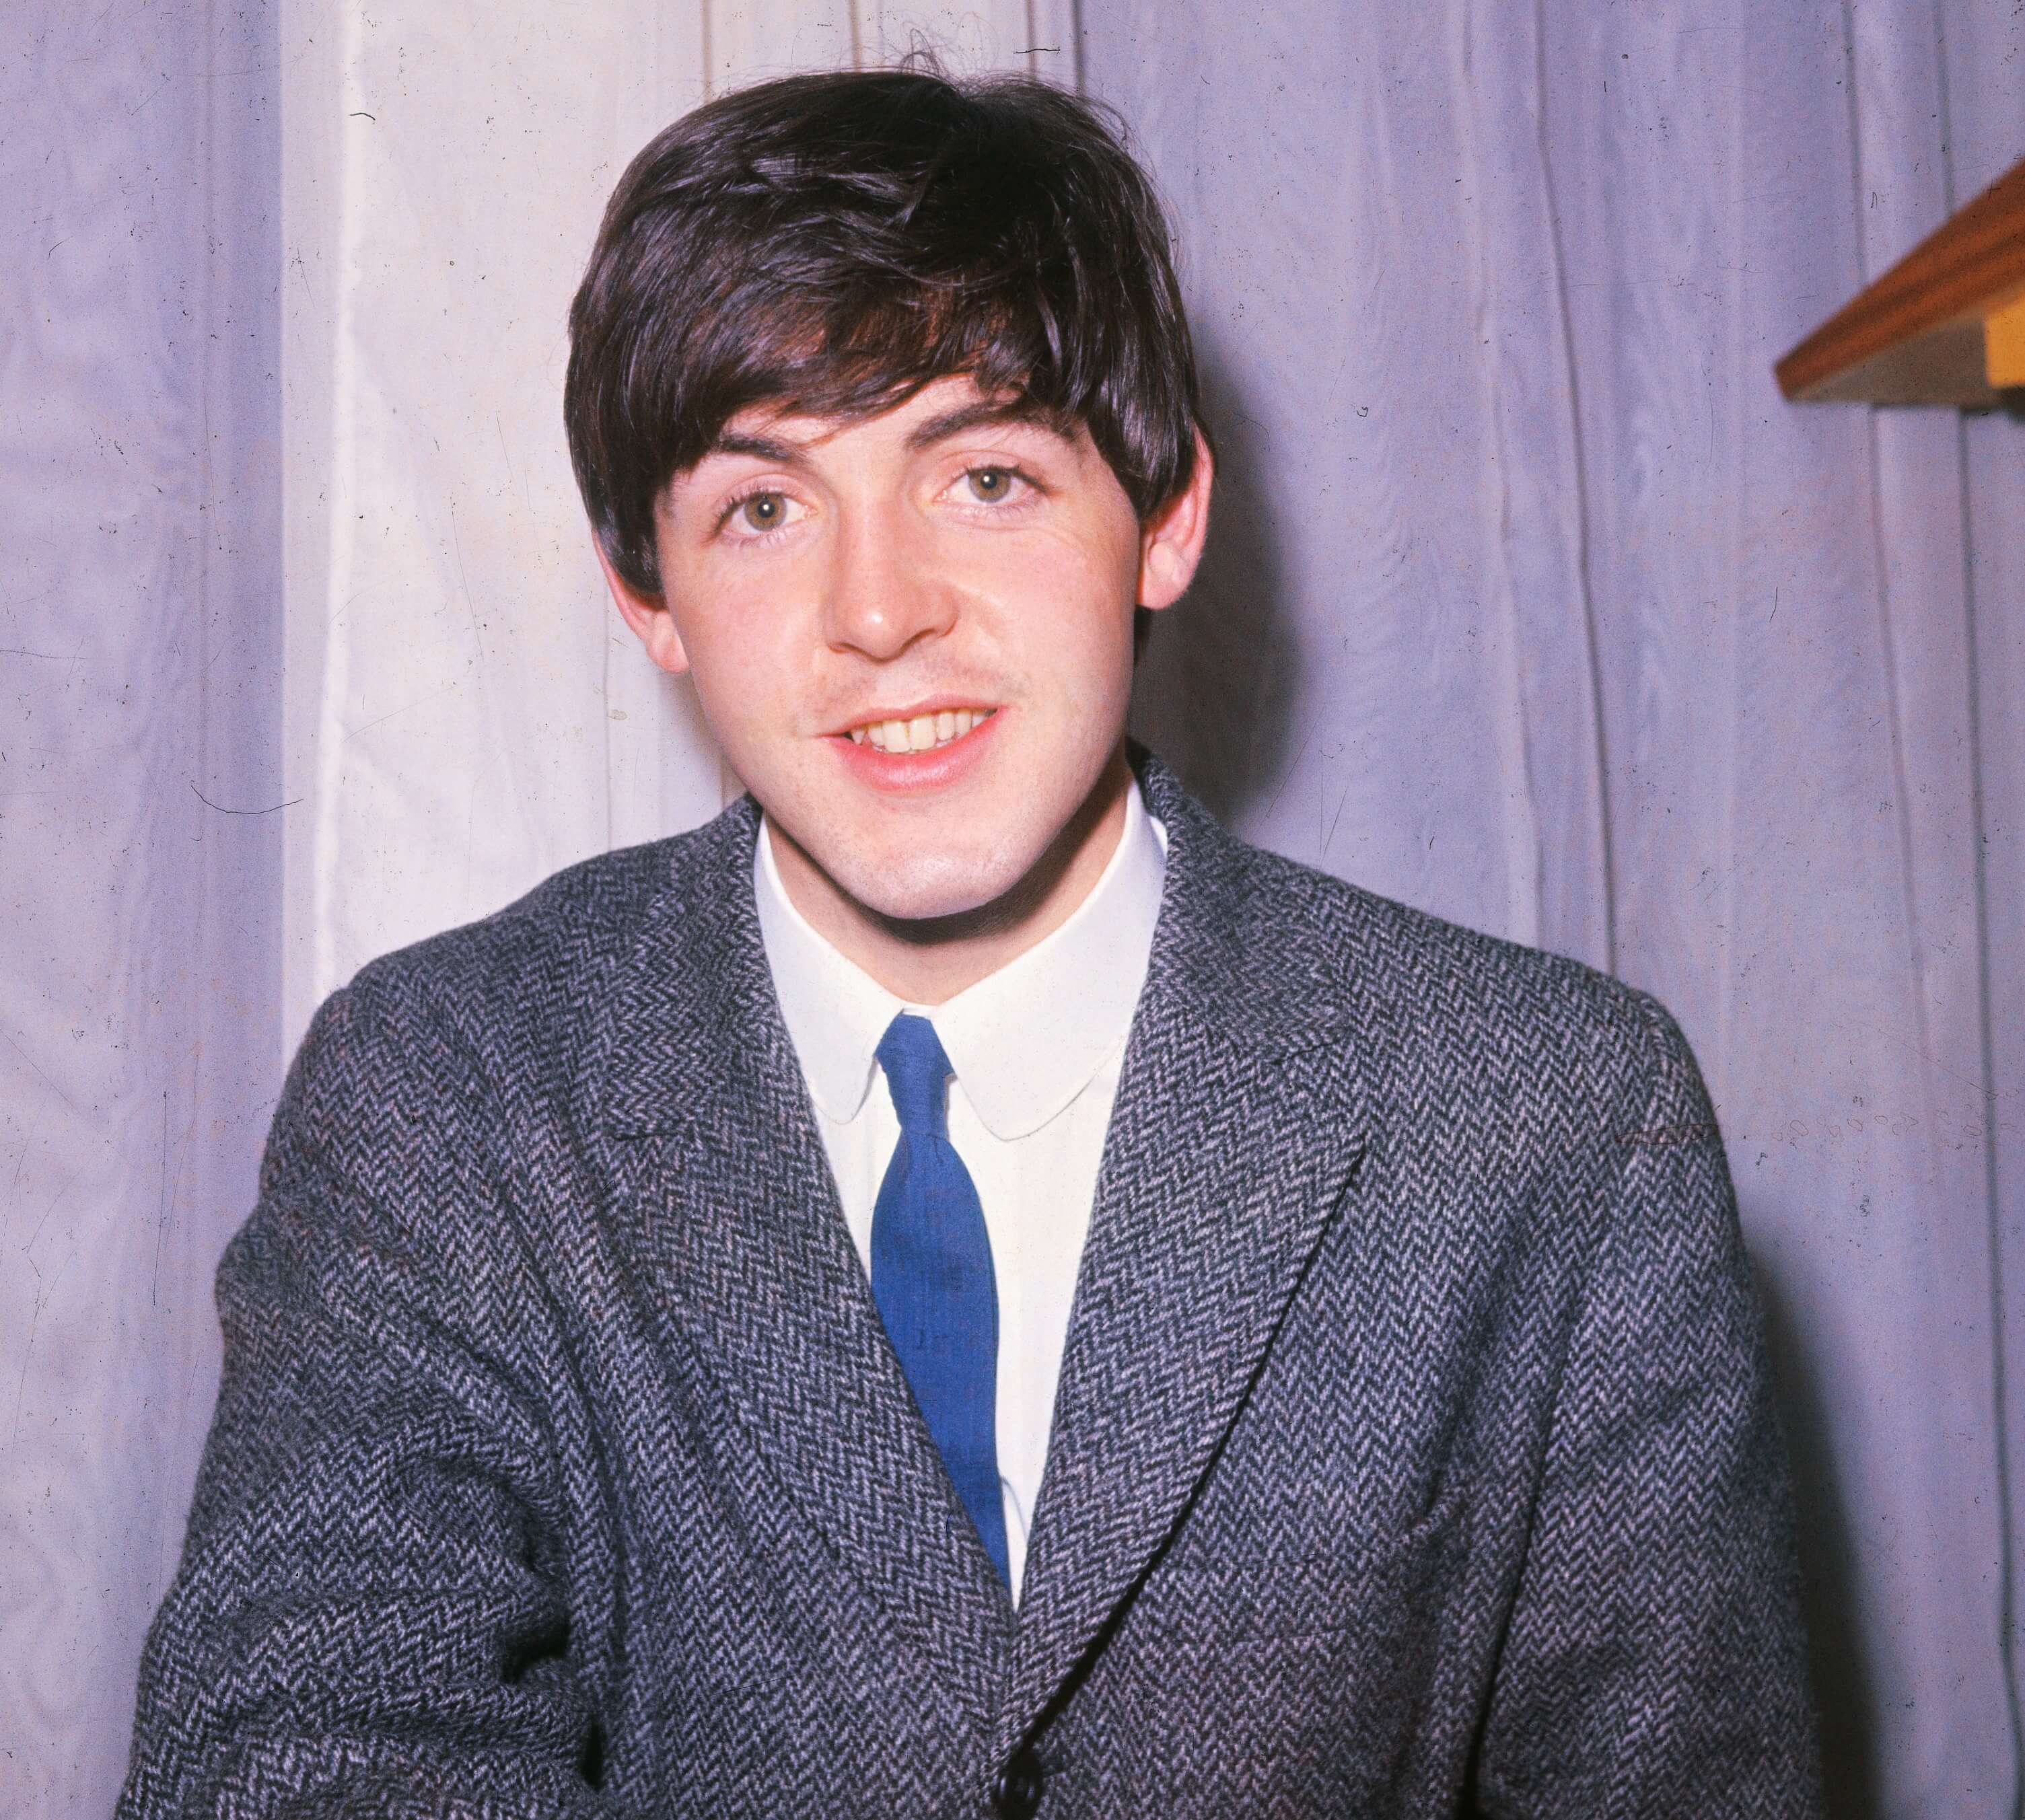 Paul McCartney: Suffering hizo buena una canción del 'Álbum blanco' de The Beatles